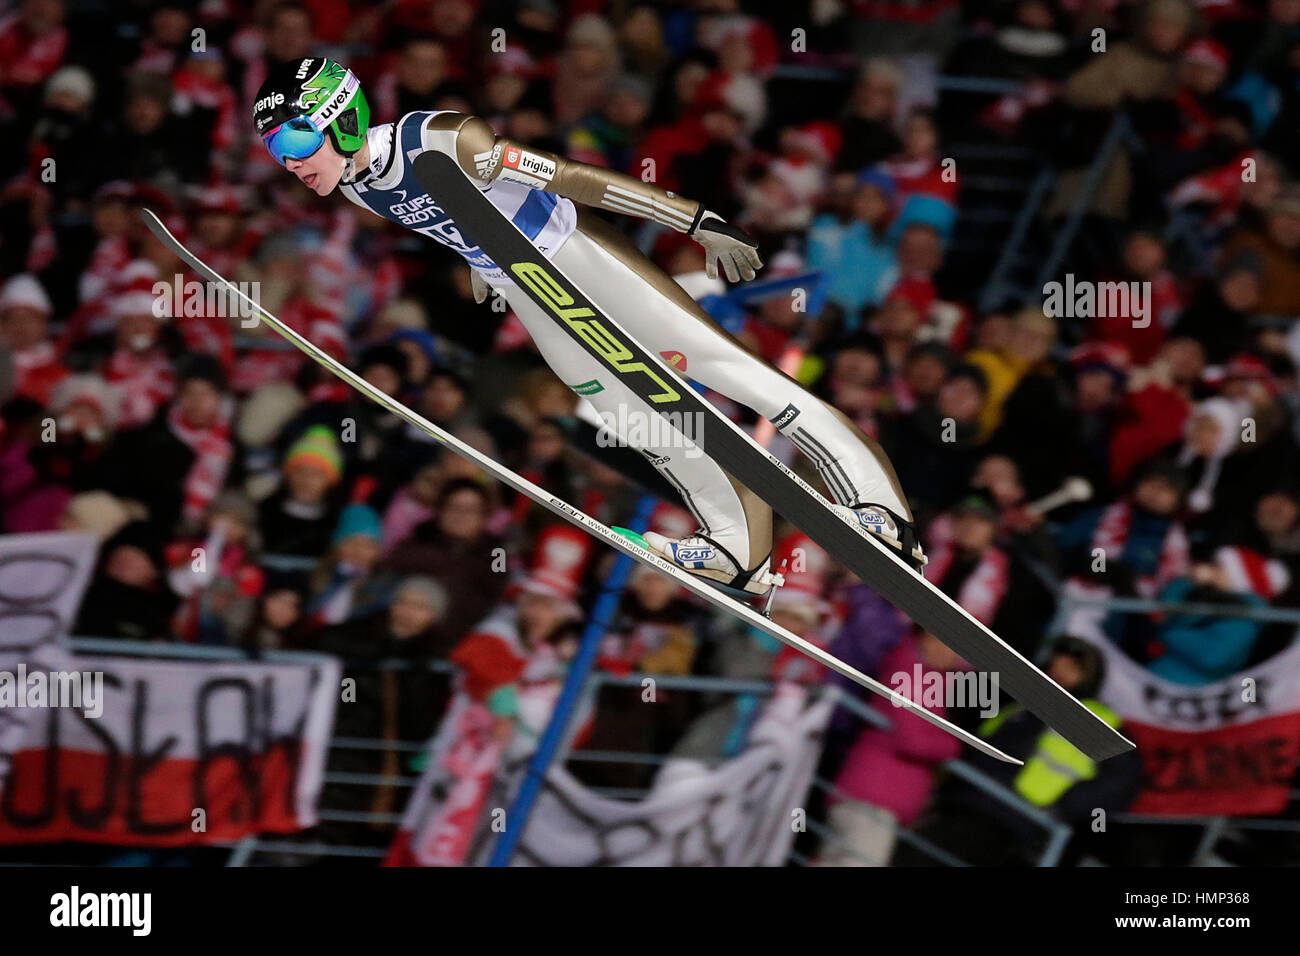 ZAKOPANE, Polonia - 24 de enero de 2016: la Copa Mundial de saltos de esquí FIS en Zakopane o/p DOMEN PREVC SLO Foto de stock